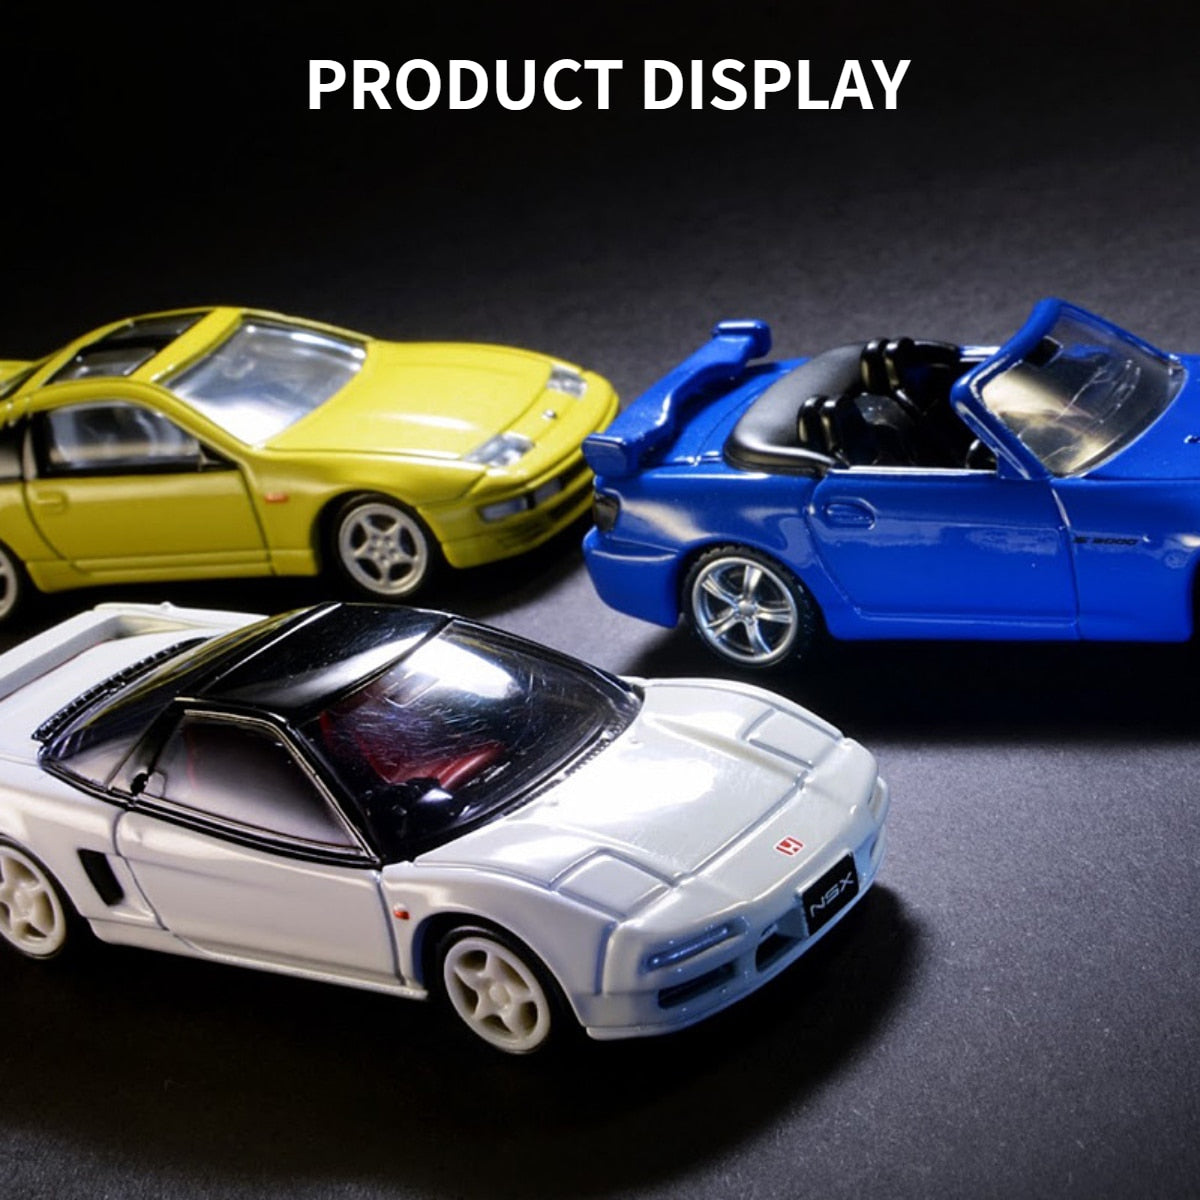 Takara Tomy Tomica Premium TP, SUBARU IMPREZA WRX TYPE R Scale Car Model Replica Collection, Kids Xmas Gift Toys for Boys